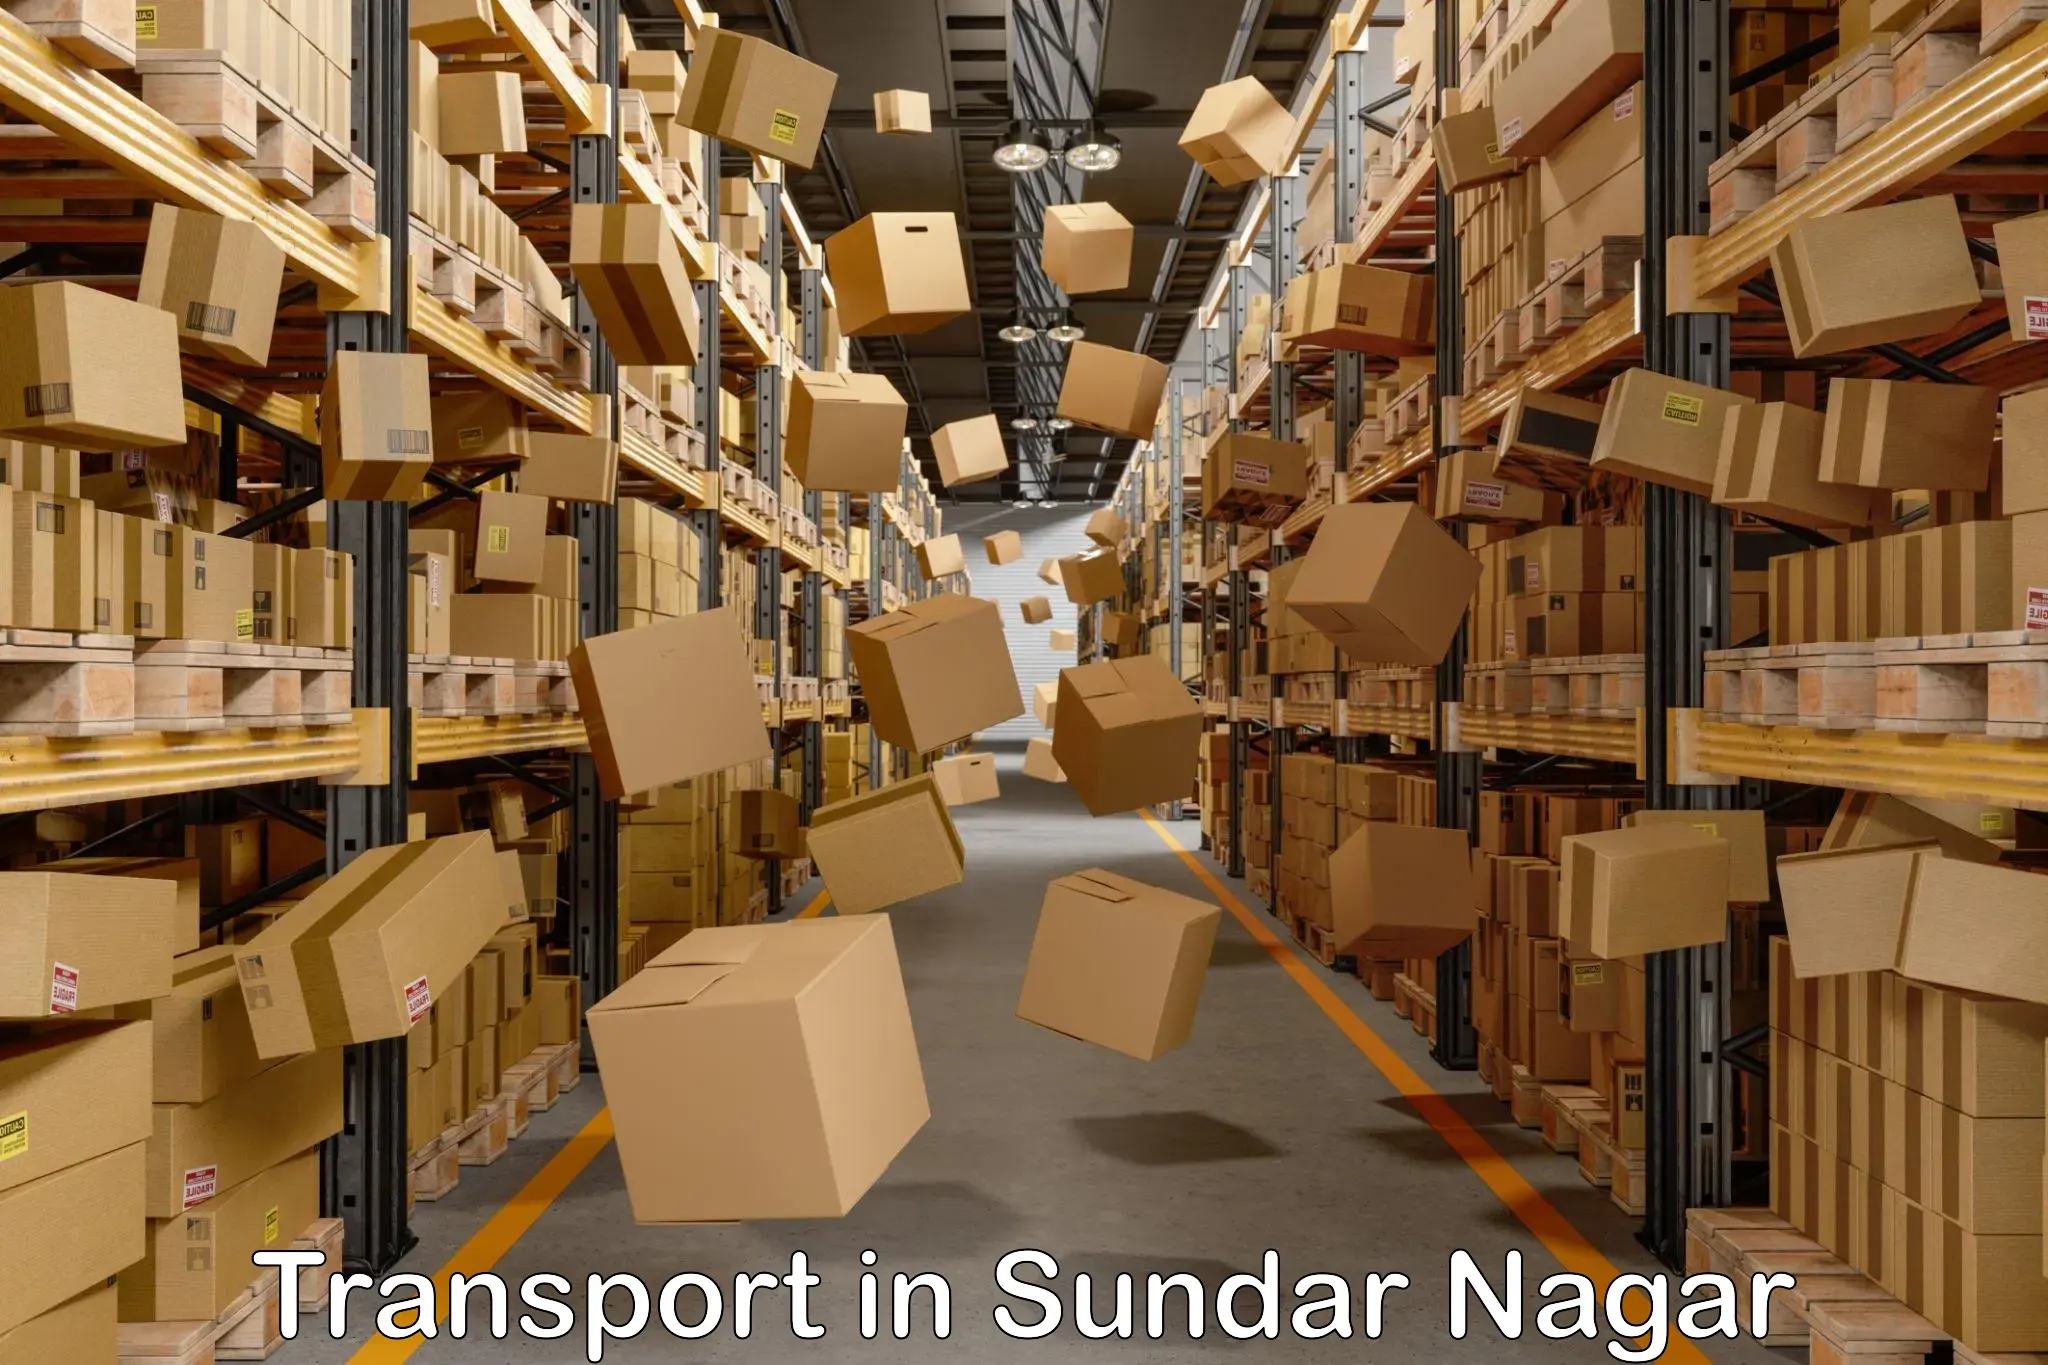 Interstate transport services in Sundar Nagar